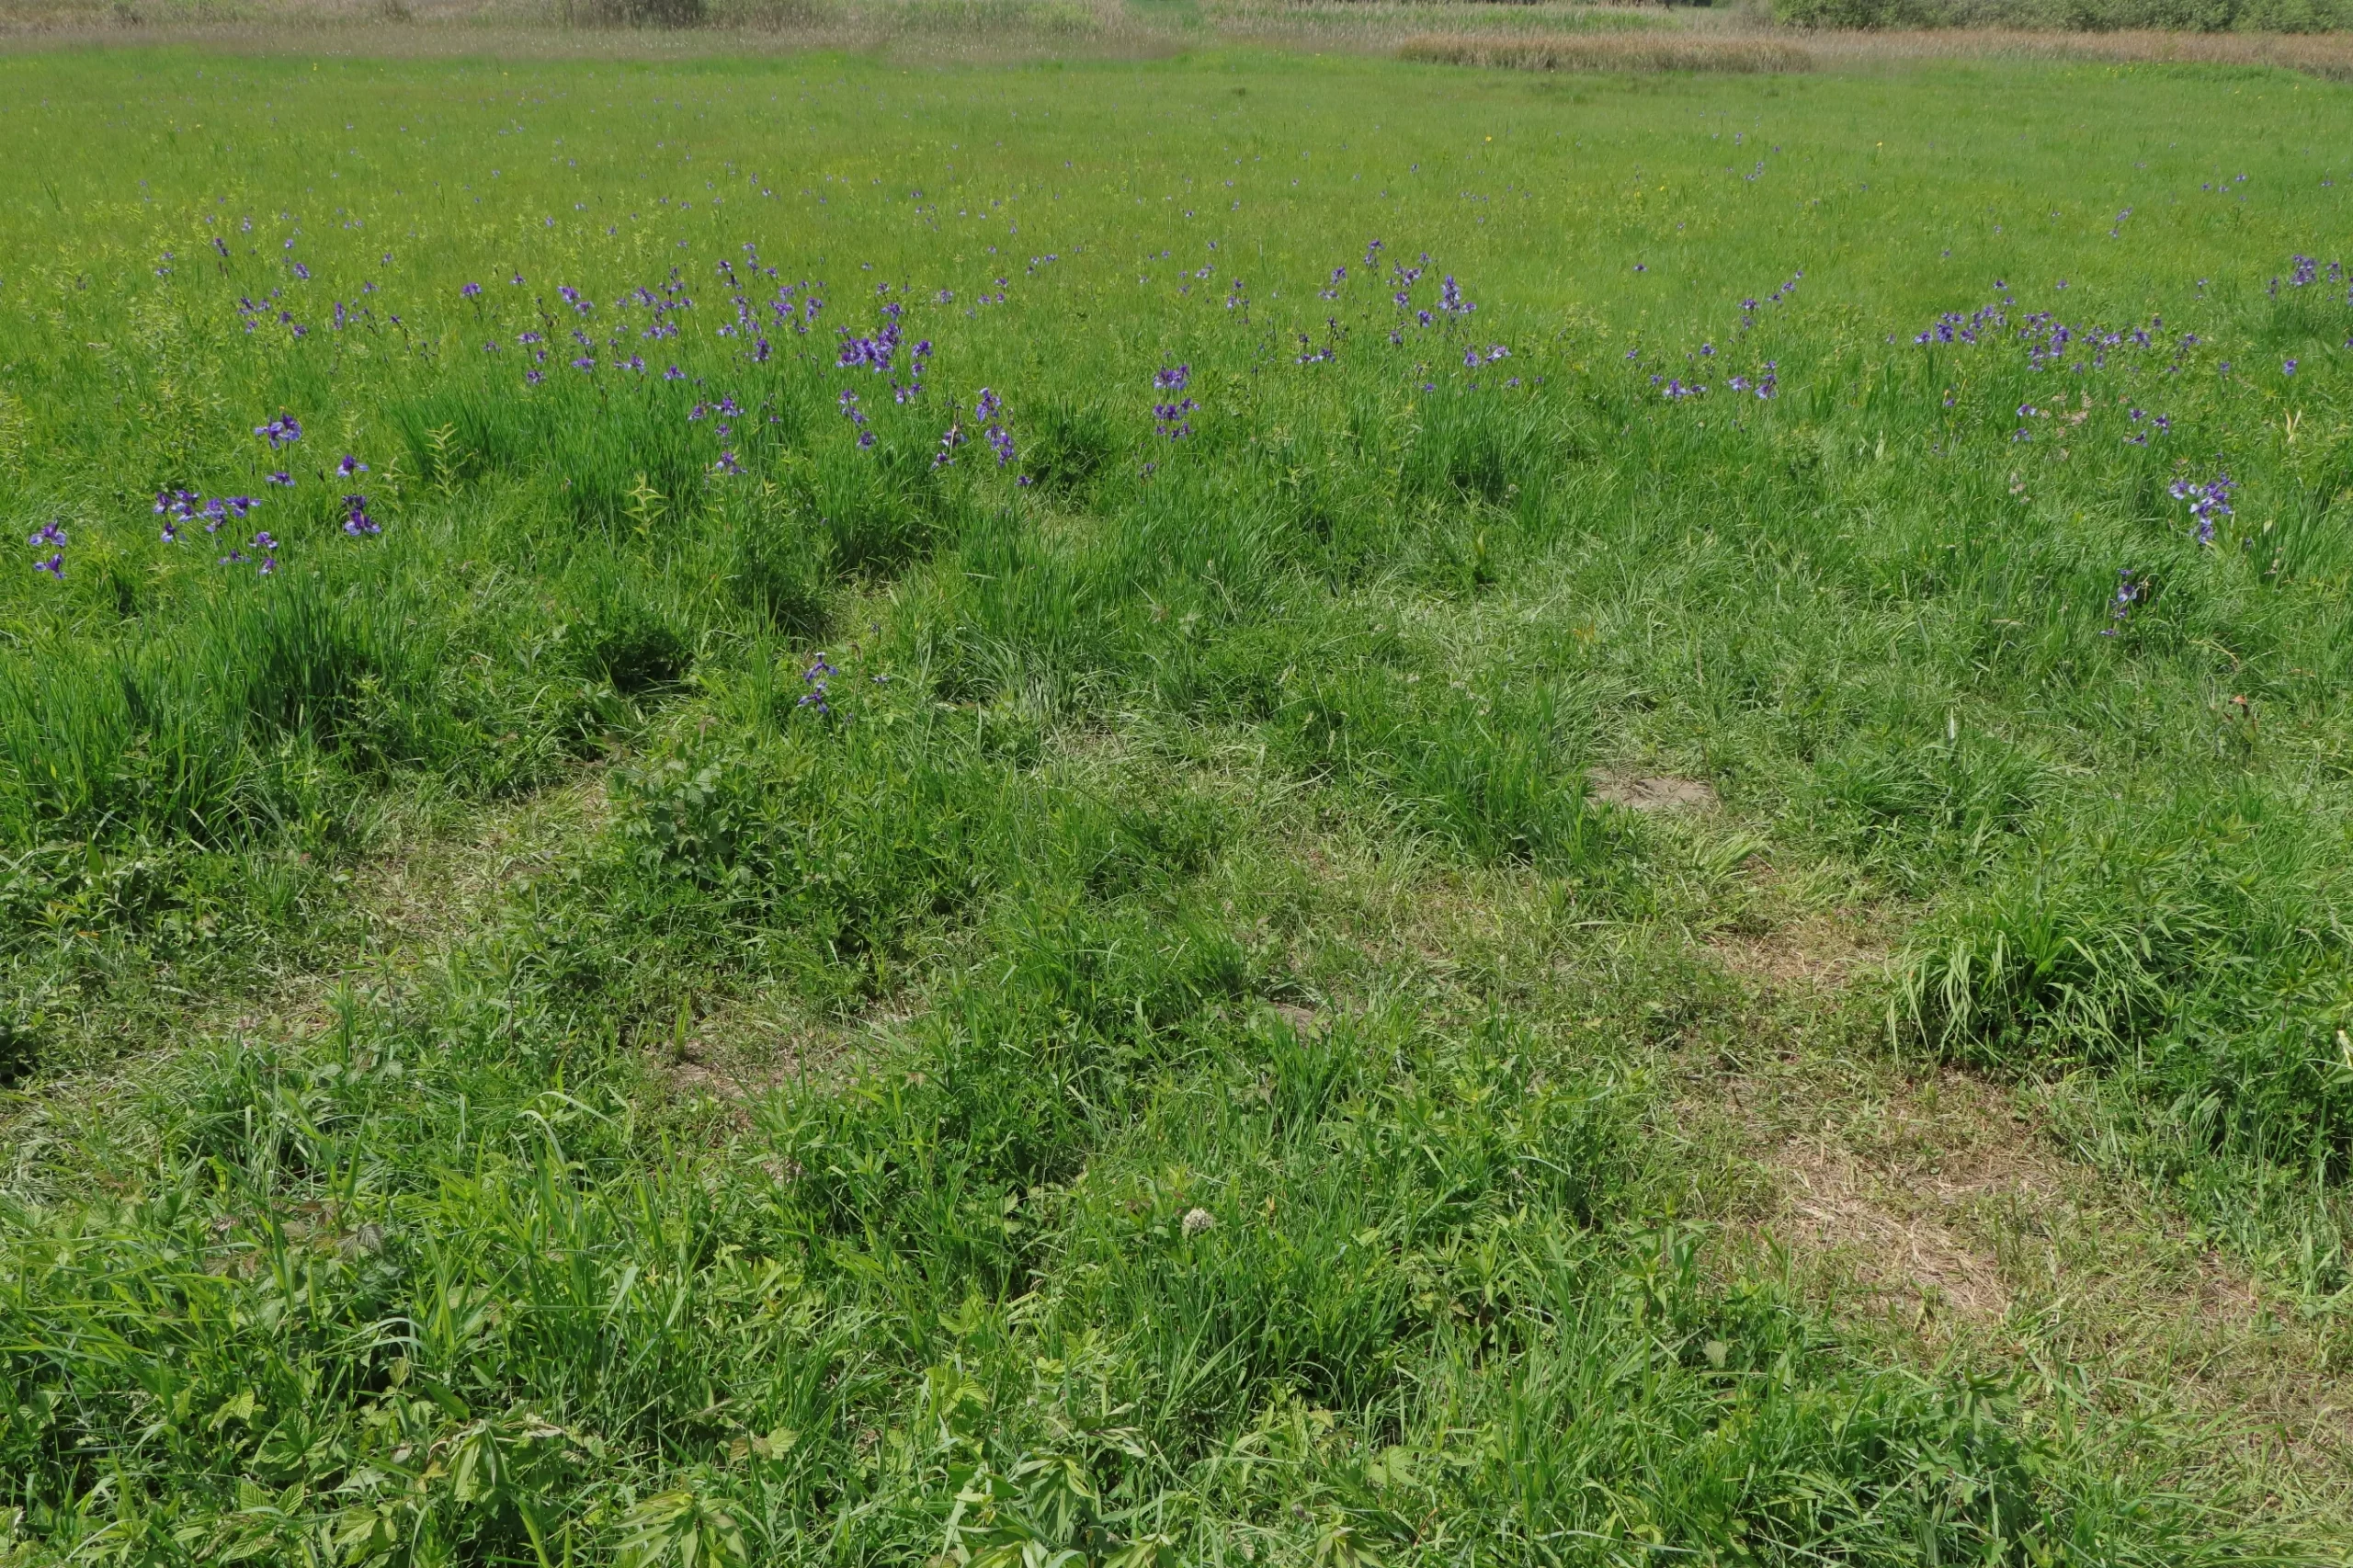 Eine grüne Wiese mit plattgetrampelten, bereits verdörrten Gras. Im Hintergrund wachsen die violett gefärbten sibirische Iris.